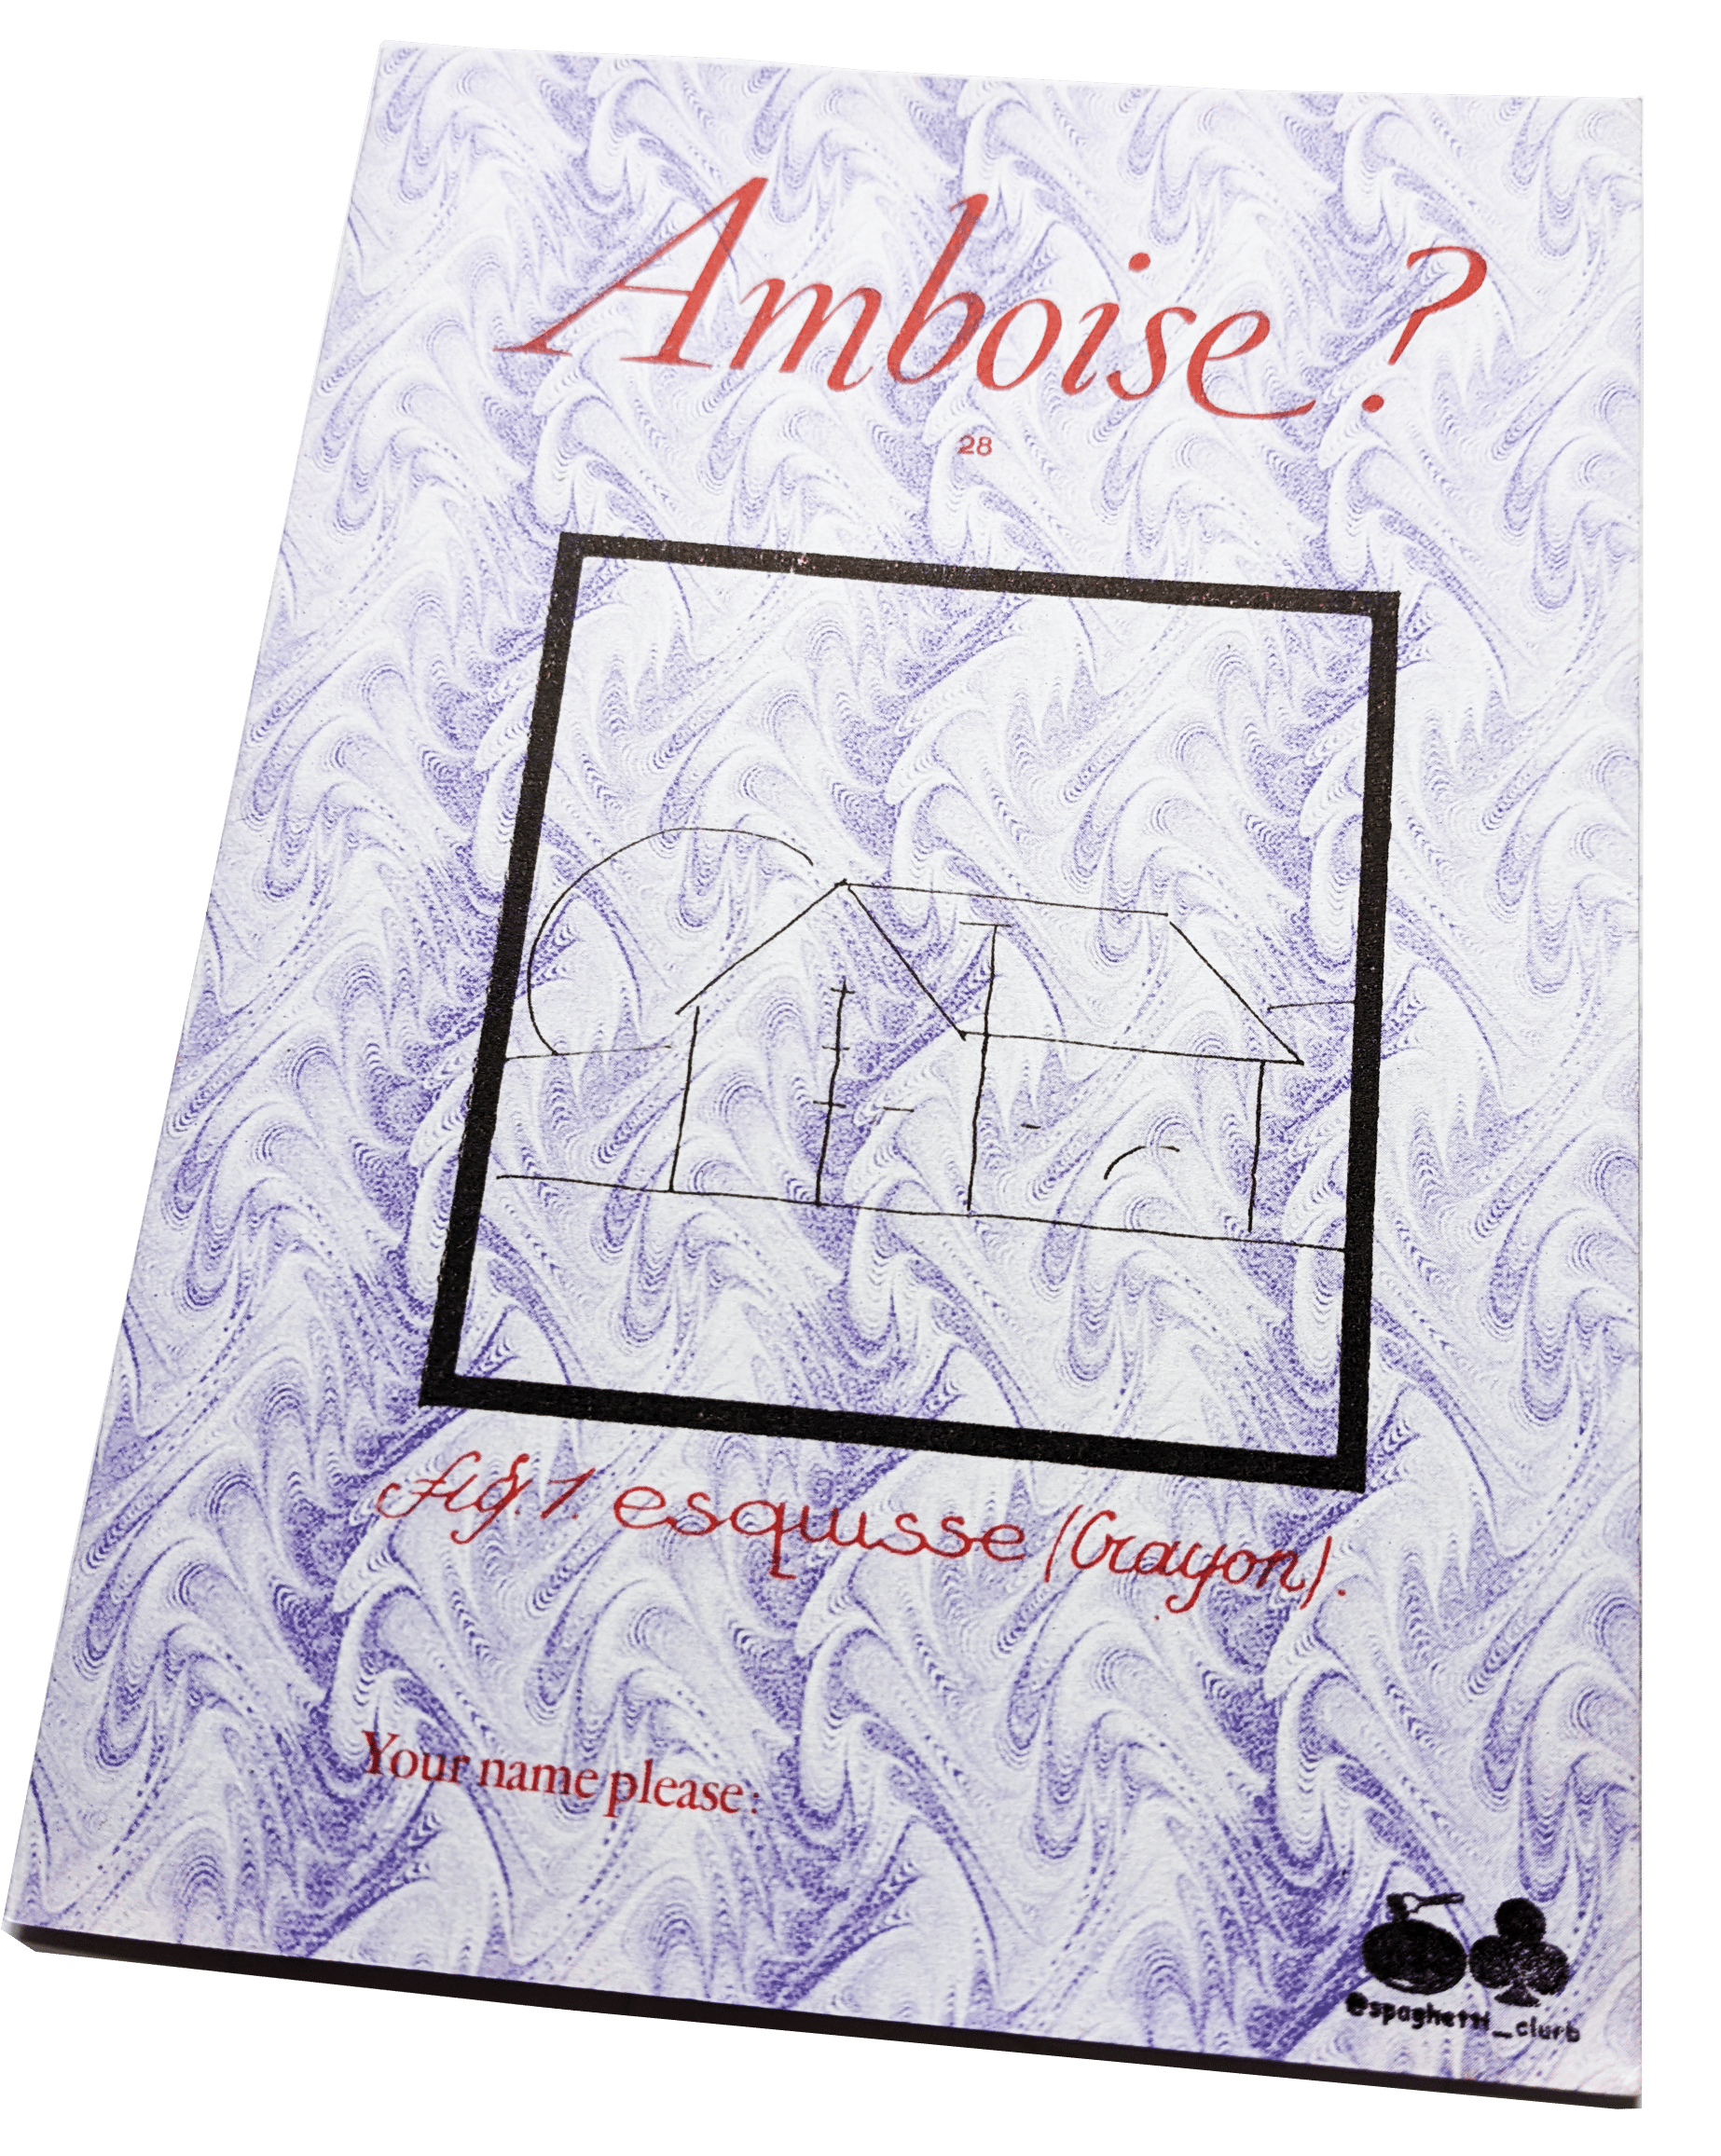 Image of Amboise?